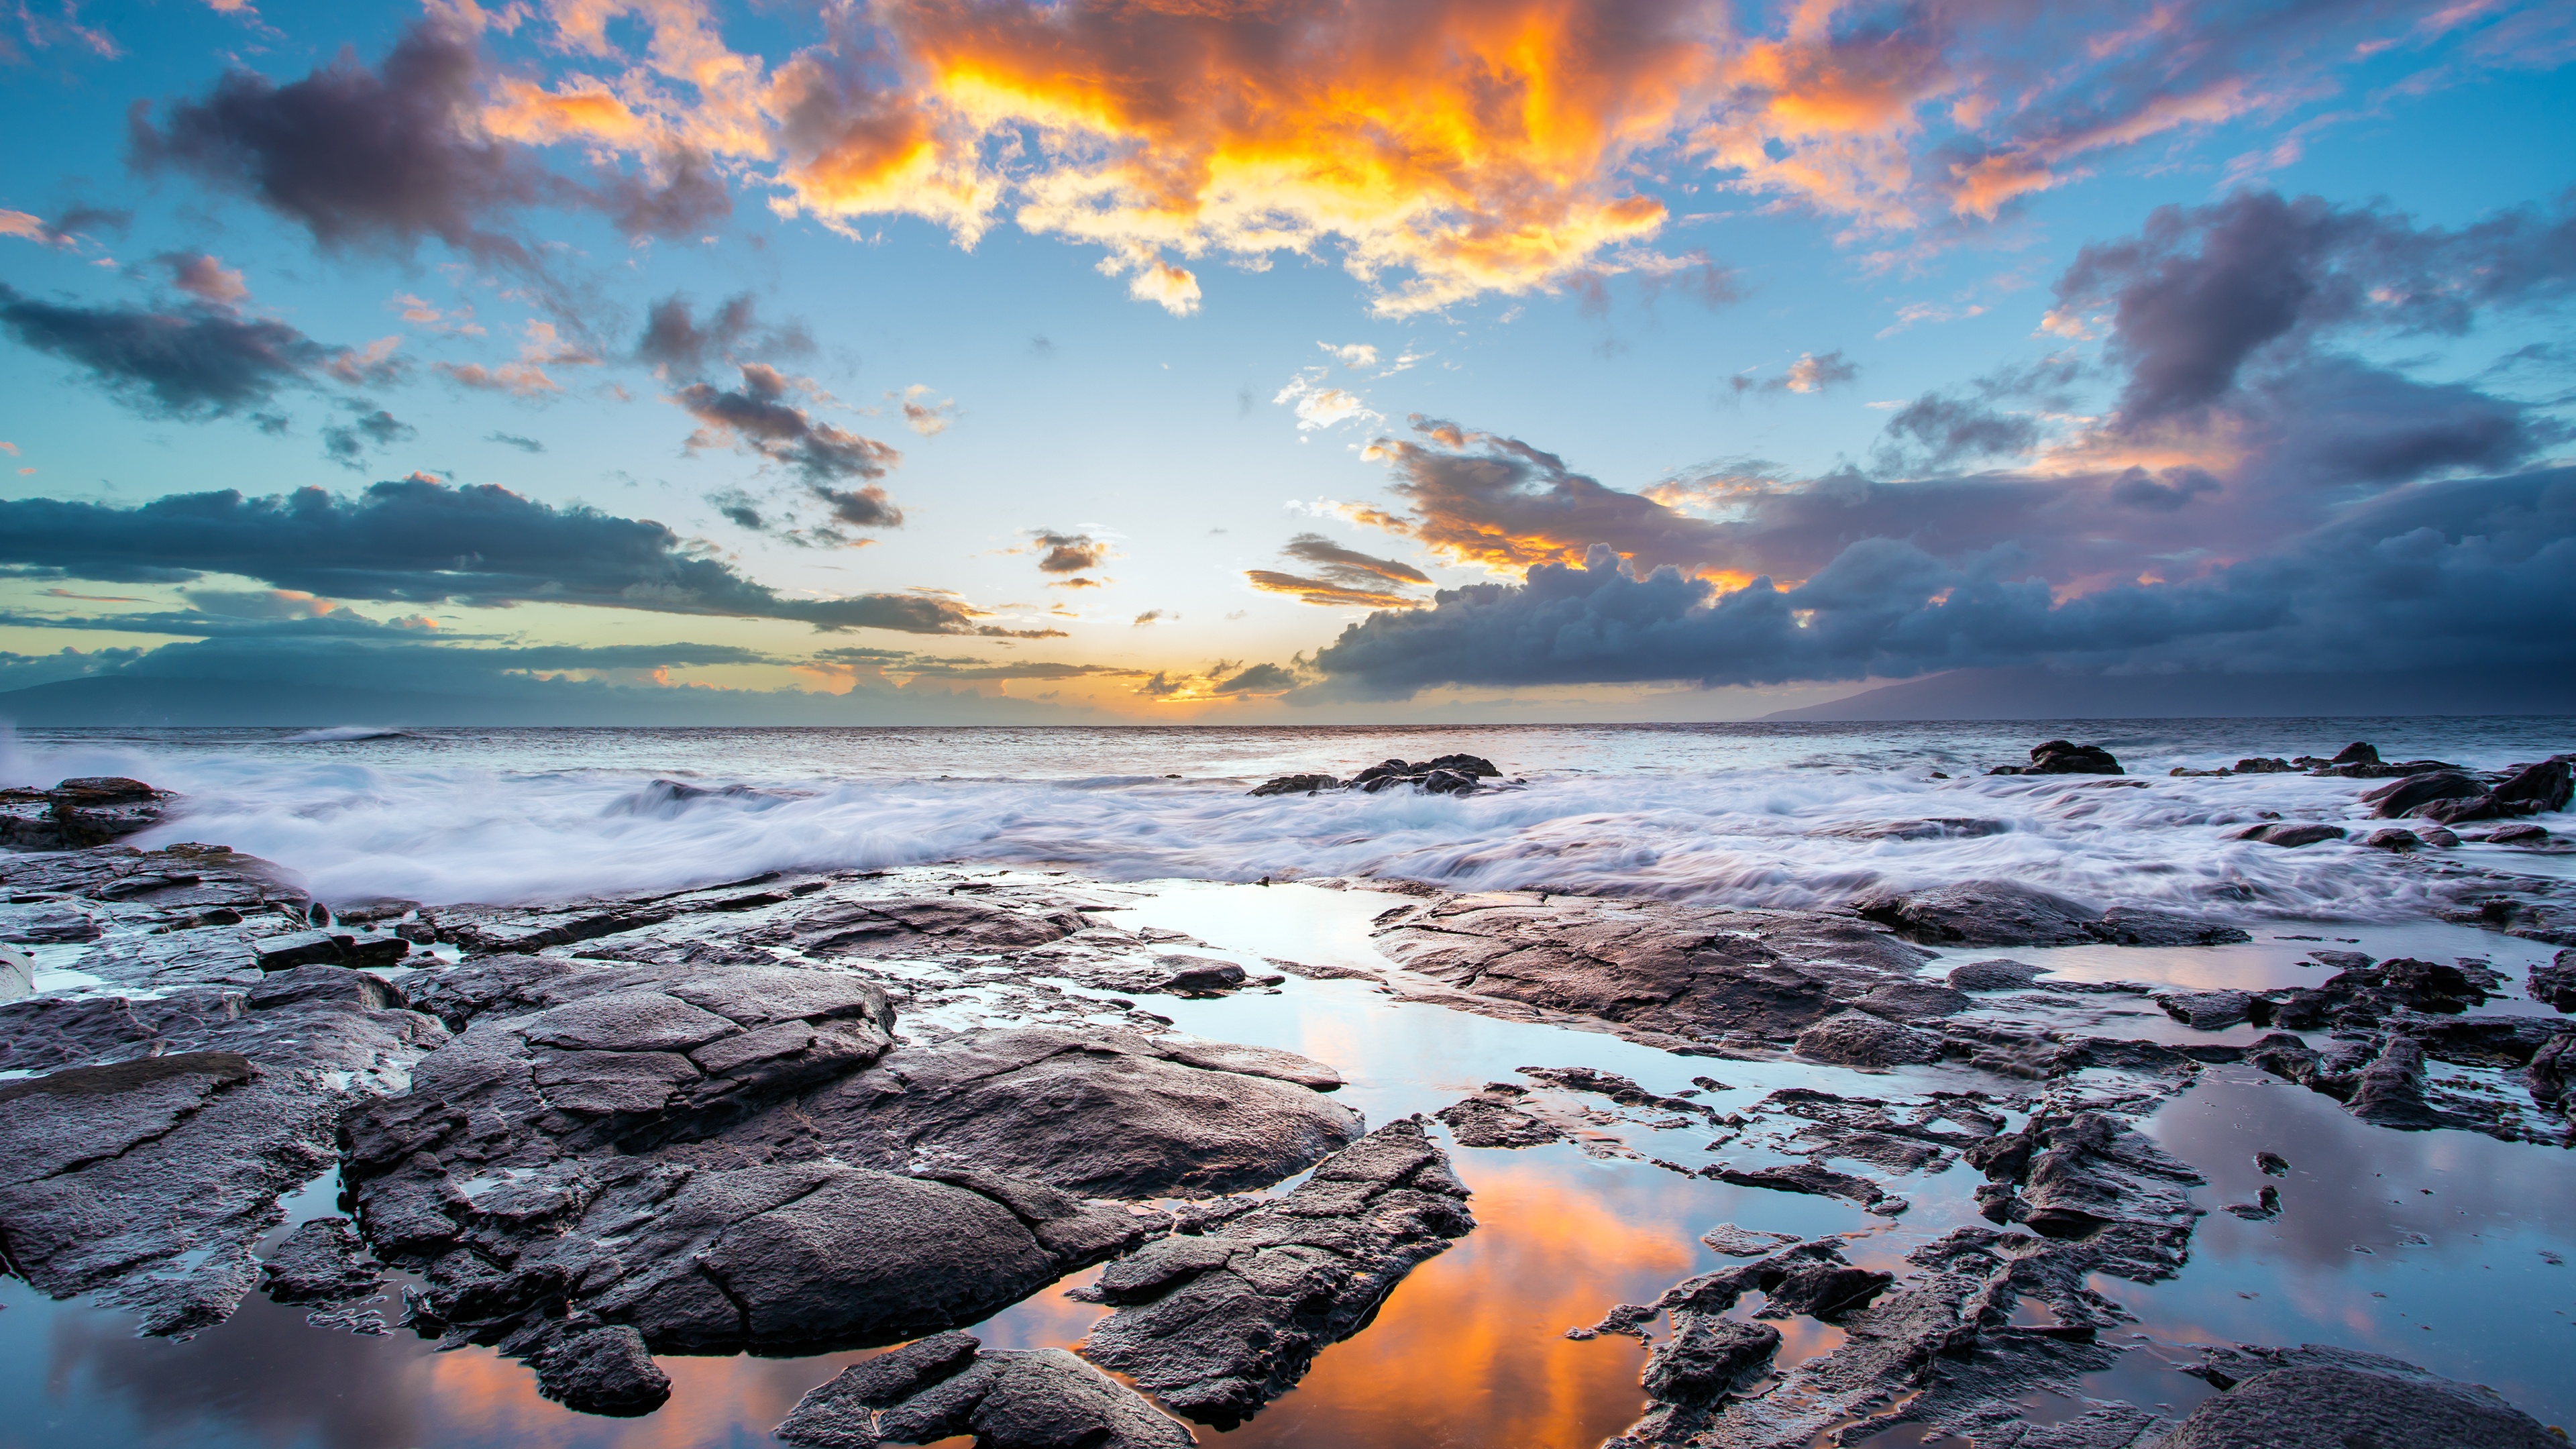 sunset maui hawaiian island 3840 x 2160 63